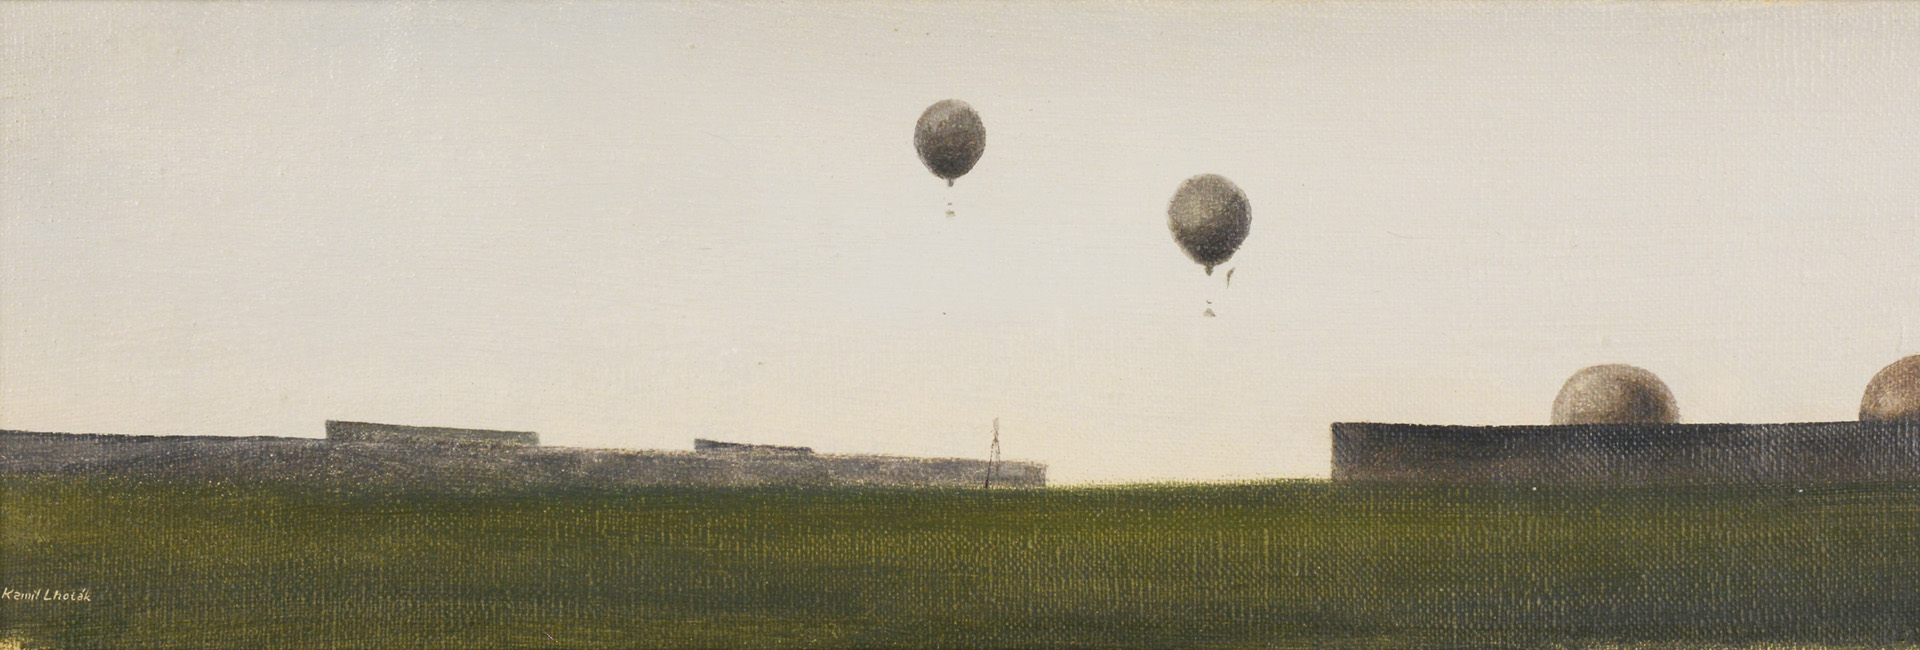 Závody balonů, 1942 | Prodáno za 1.620.000Kč | Pol. č. 182 [Kamil Lhoták (1912 - 1990)]